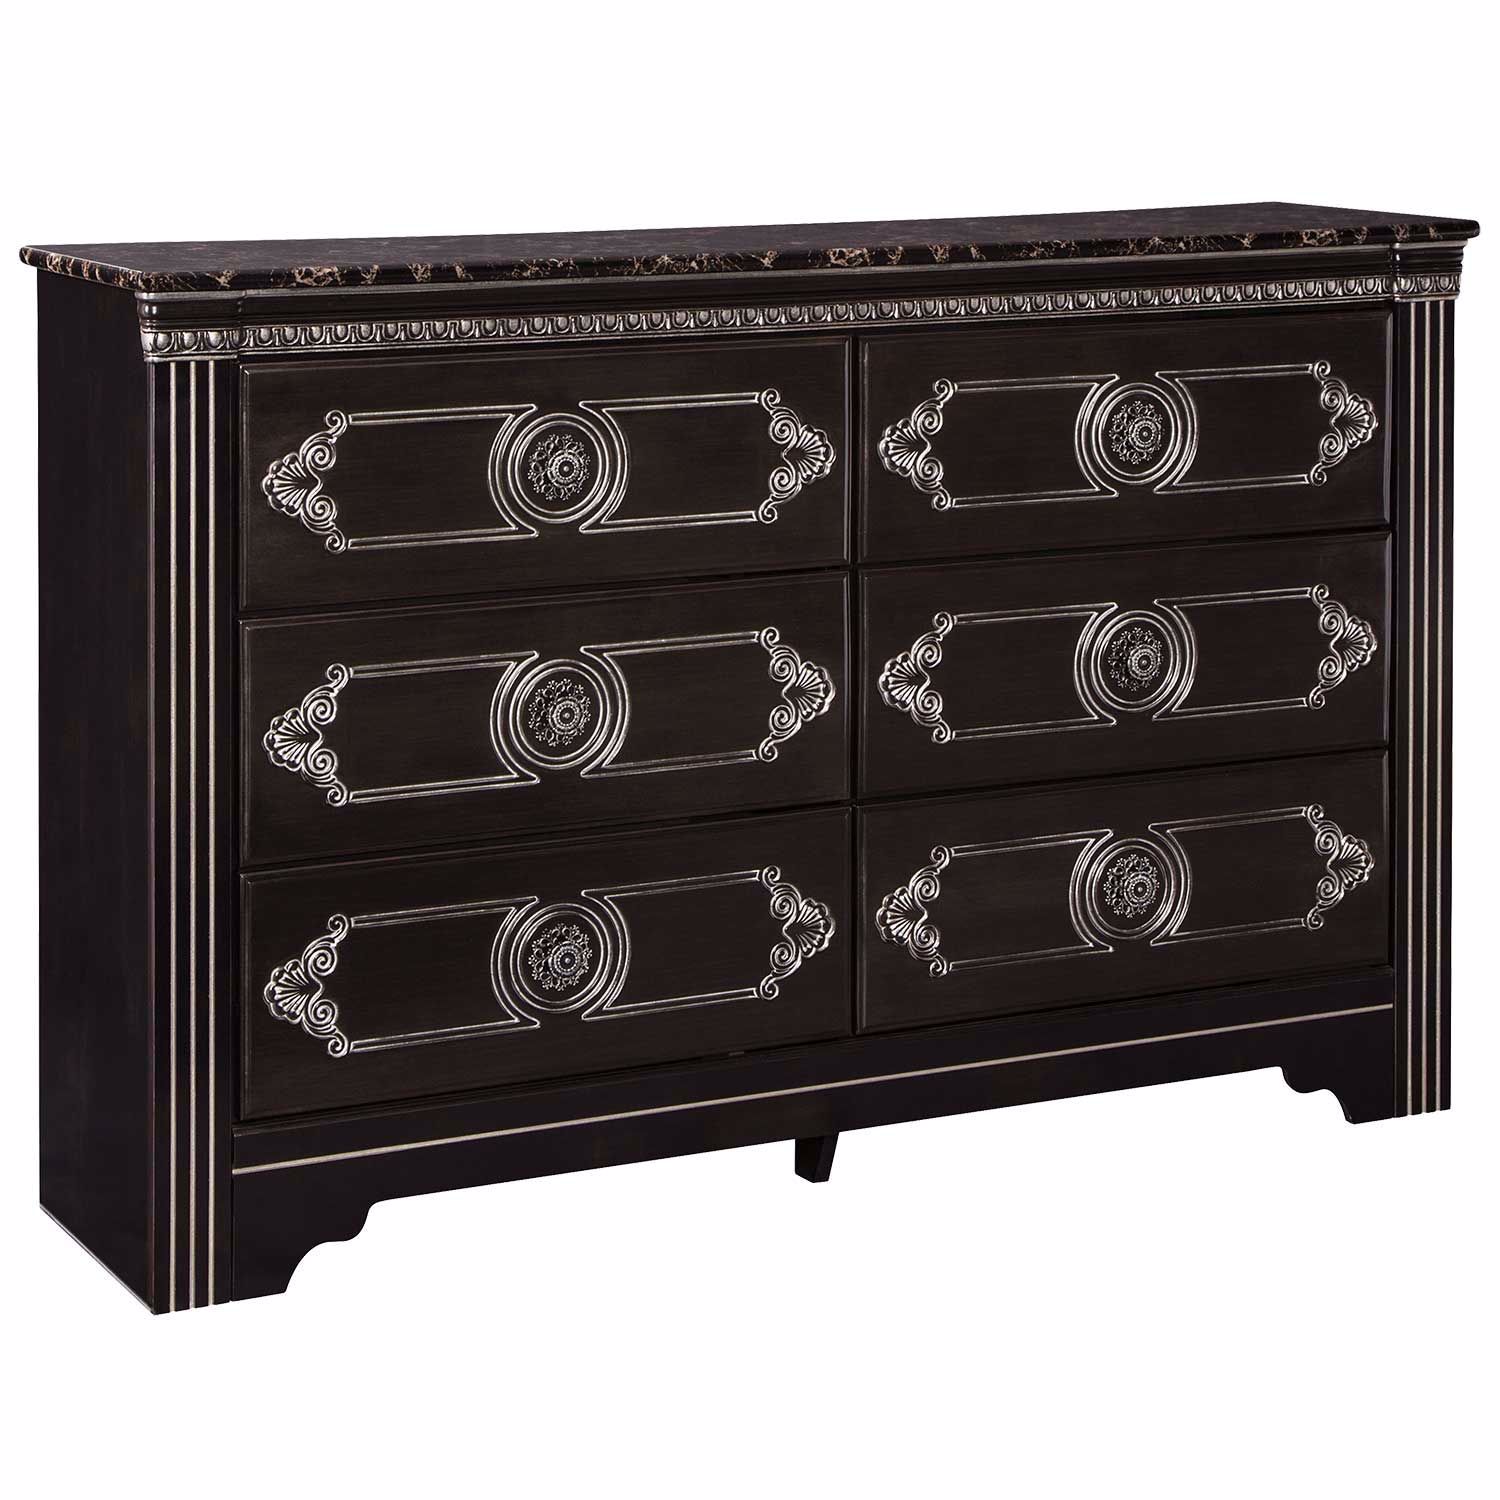 Banalski Drawer Dresser B342 31 Ashley Furniture Afw Com